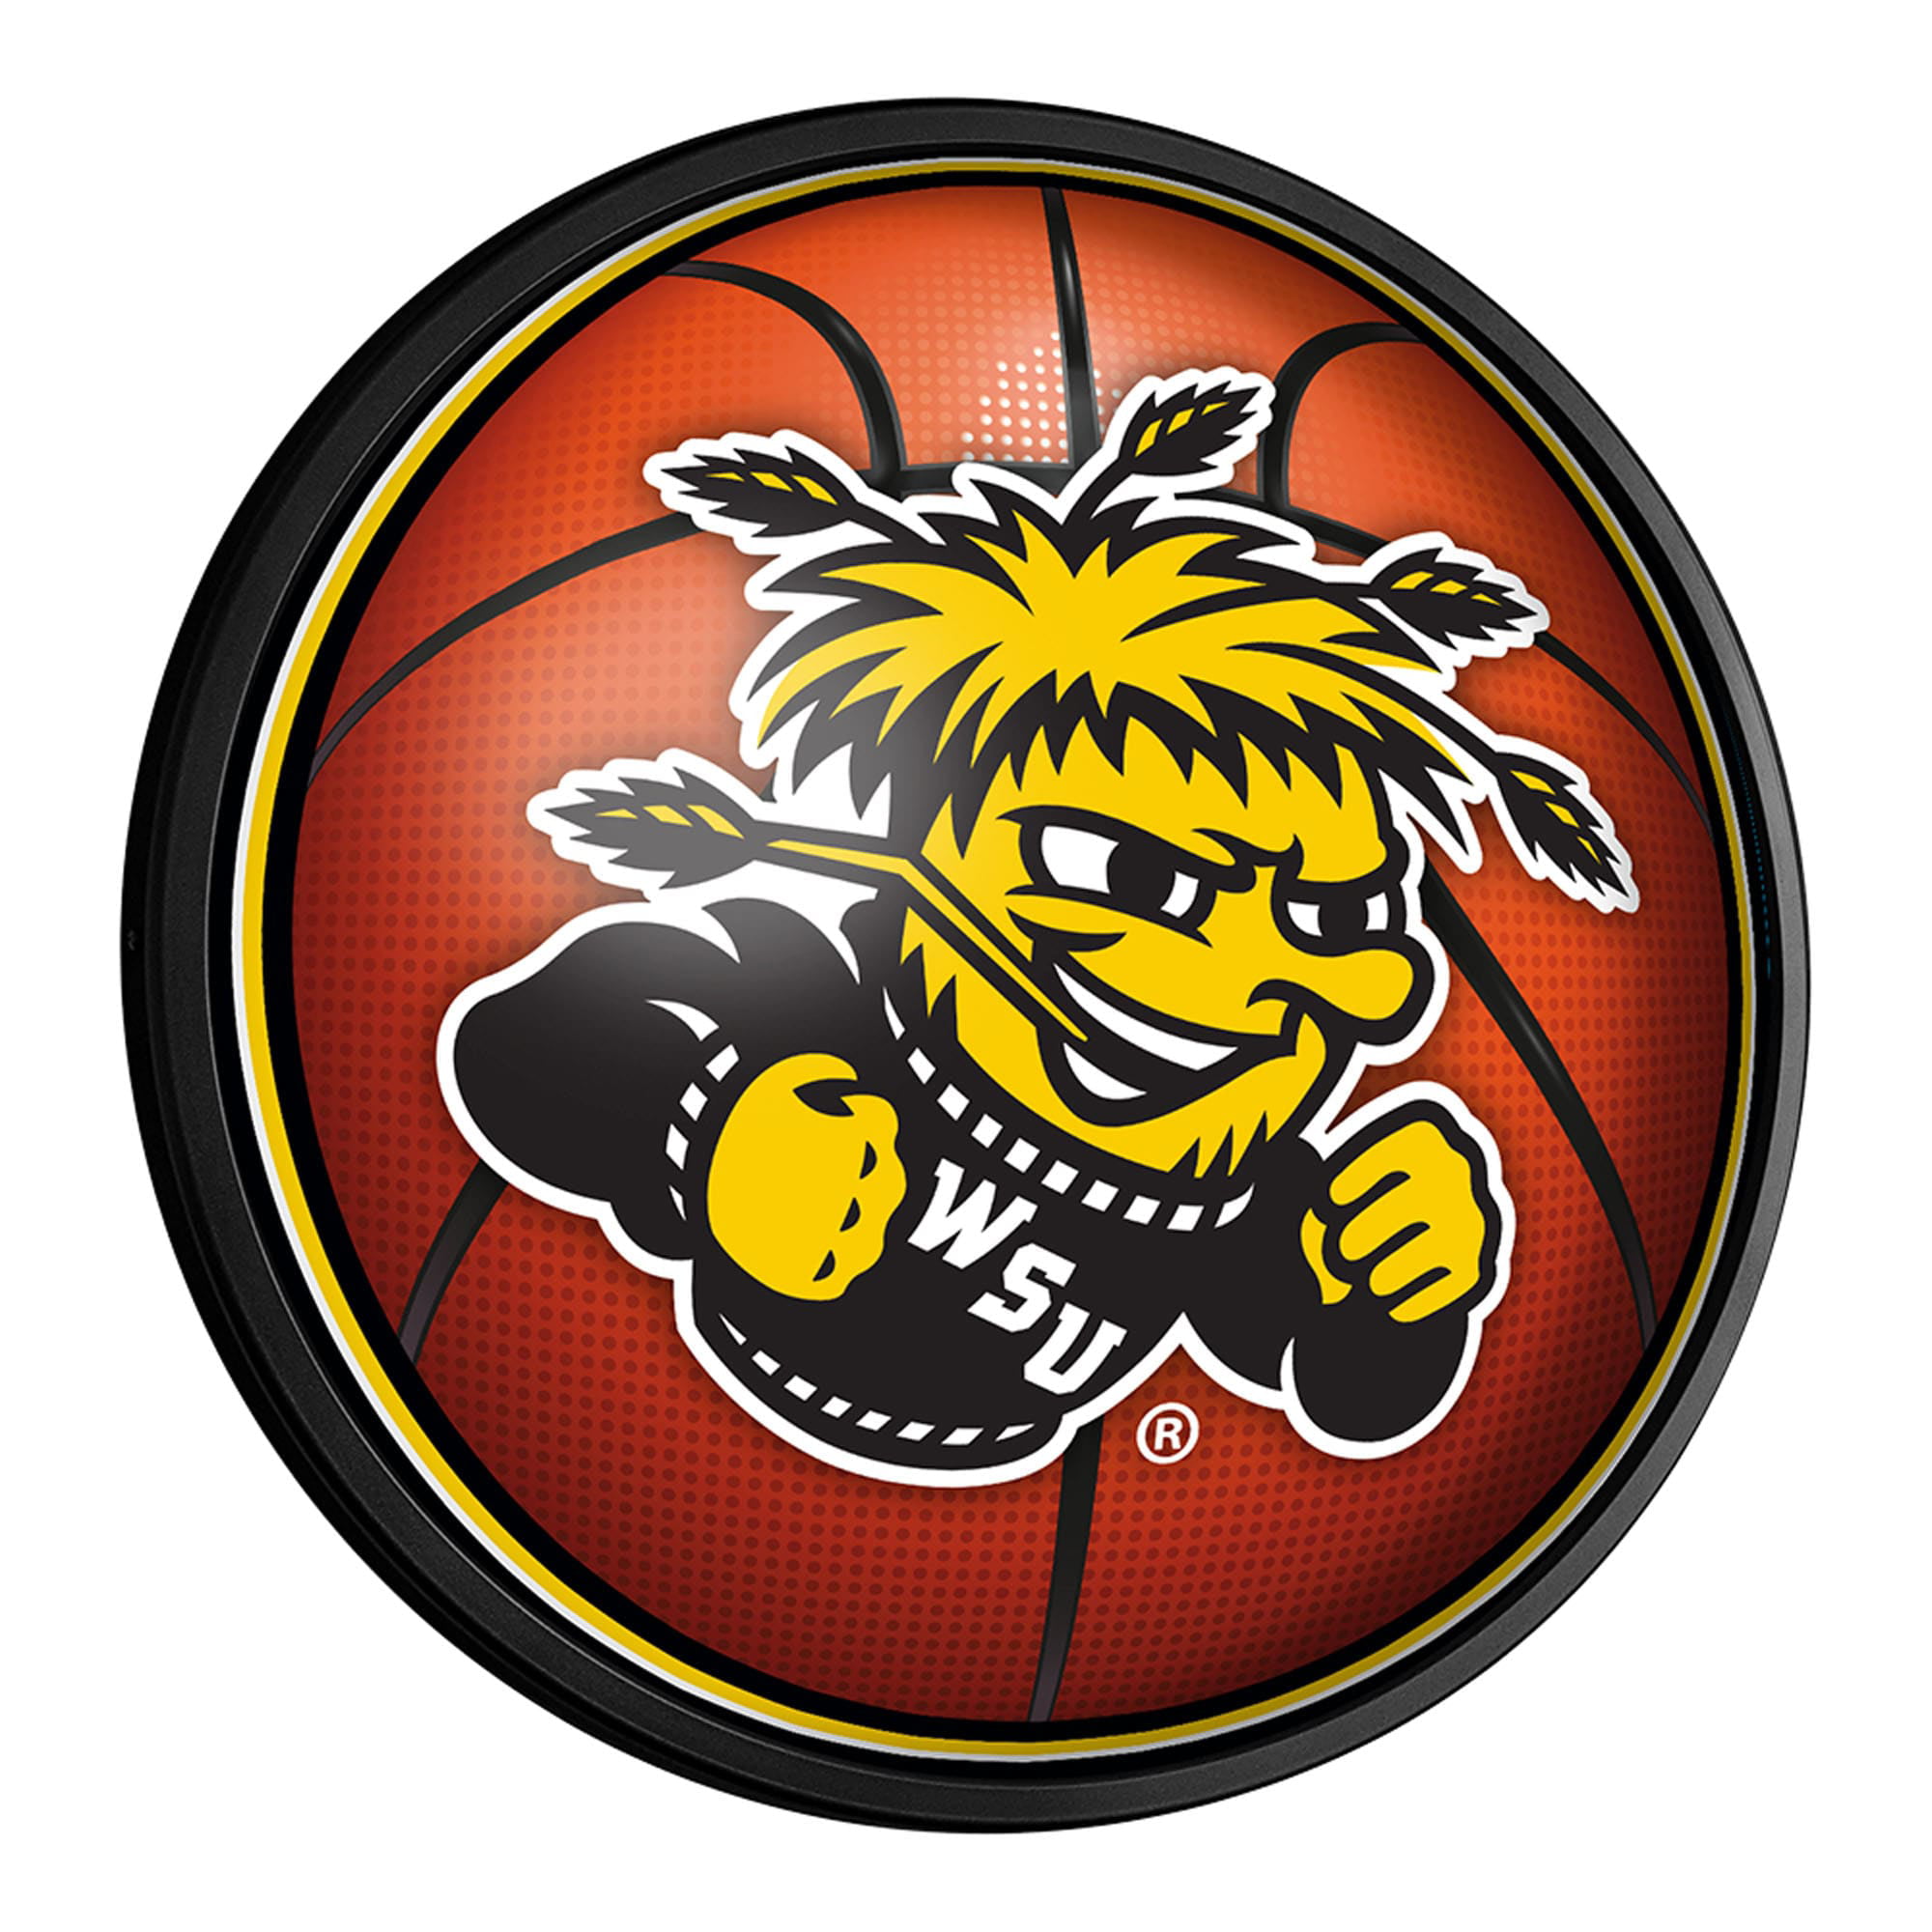 Wichita State University Shockers Rawlings Full Size Basketball 